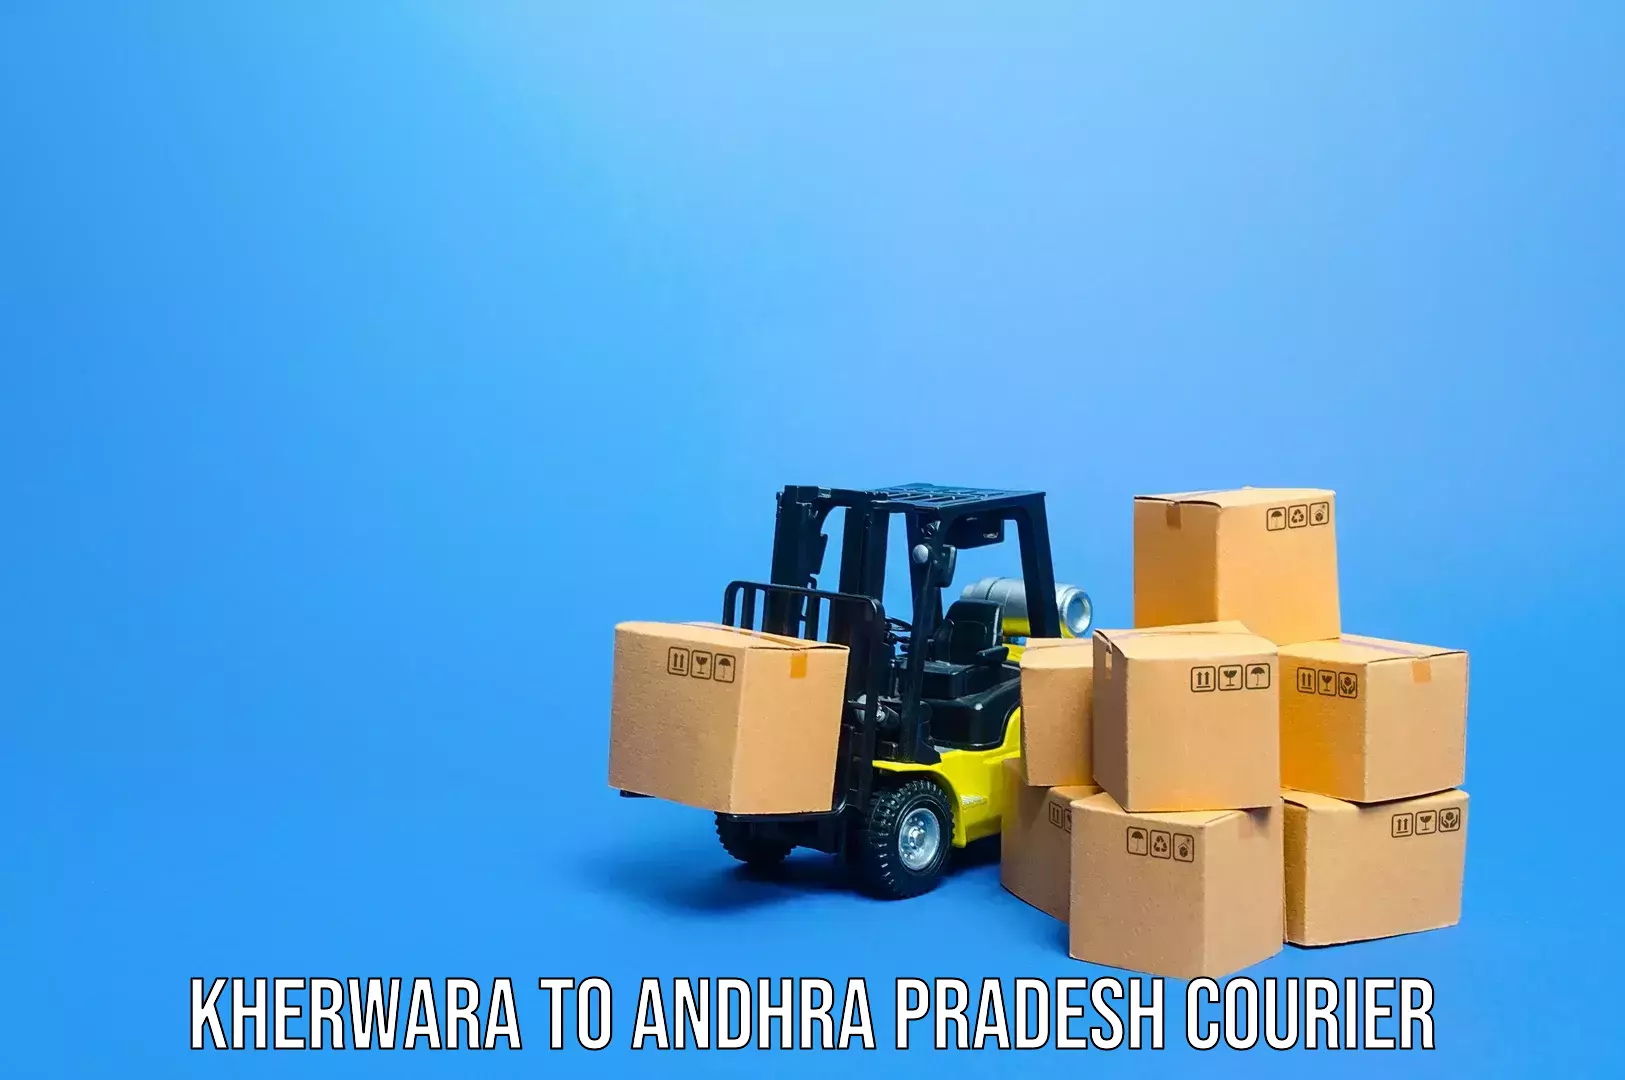 Baggage transport network Kherwara to Proddatur